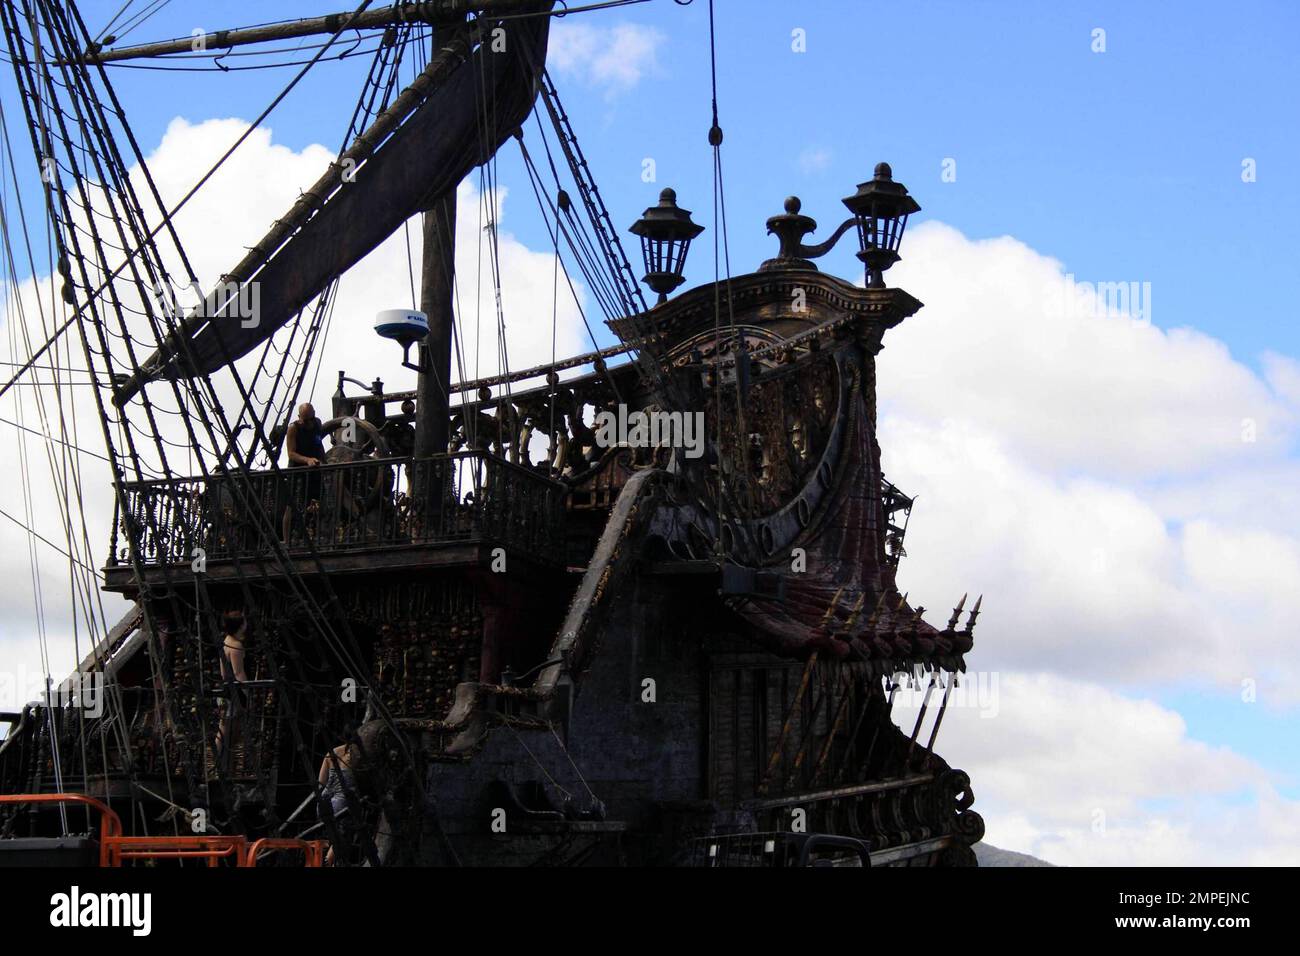 The Black Pearl, la nave di Captain Jack Sparrow nella serie cinematografica "Pirati dei Caraibi" è stata revisionata e rinominata per l'ultimo film "Pirati dei Caraibi: Su Stranger Tides". La Perla Nera fu trasformata nella vendetta della Regina Anna, aggiungendo un terzo ponte e altre caratteristiche distintive. La lunghezza totale dell'imbarcazione è di 110'. Originariamente una barca di servizio in metallo, il telaio è stato ampliato di tre metri e la nave è stata costruita sopra di esso. Johnny Depp tornerà a 'on Stranger Tides' e sarà affiancato dalla nuova co-star Penelope Cruz quando il film sarà pubblicato nel 2011. Honolulu, Ciao. 7/6/10 Foto Stock